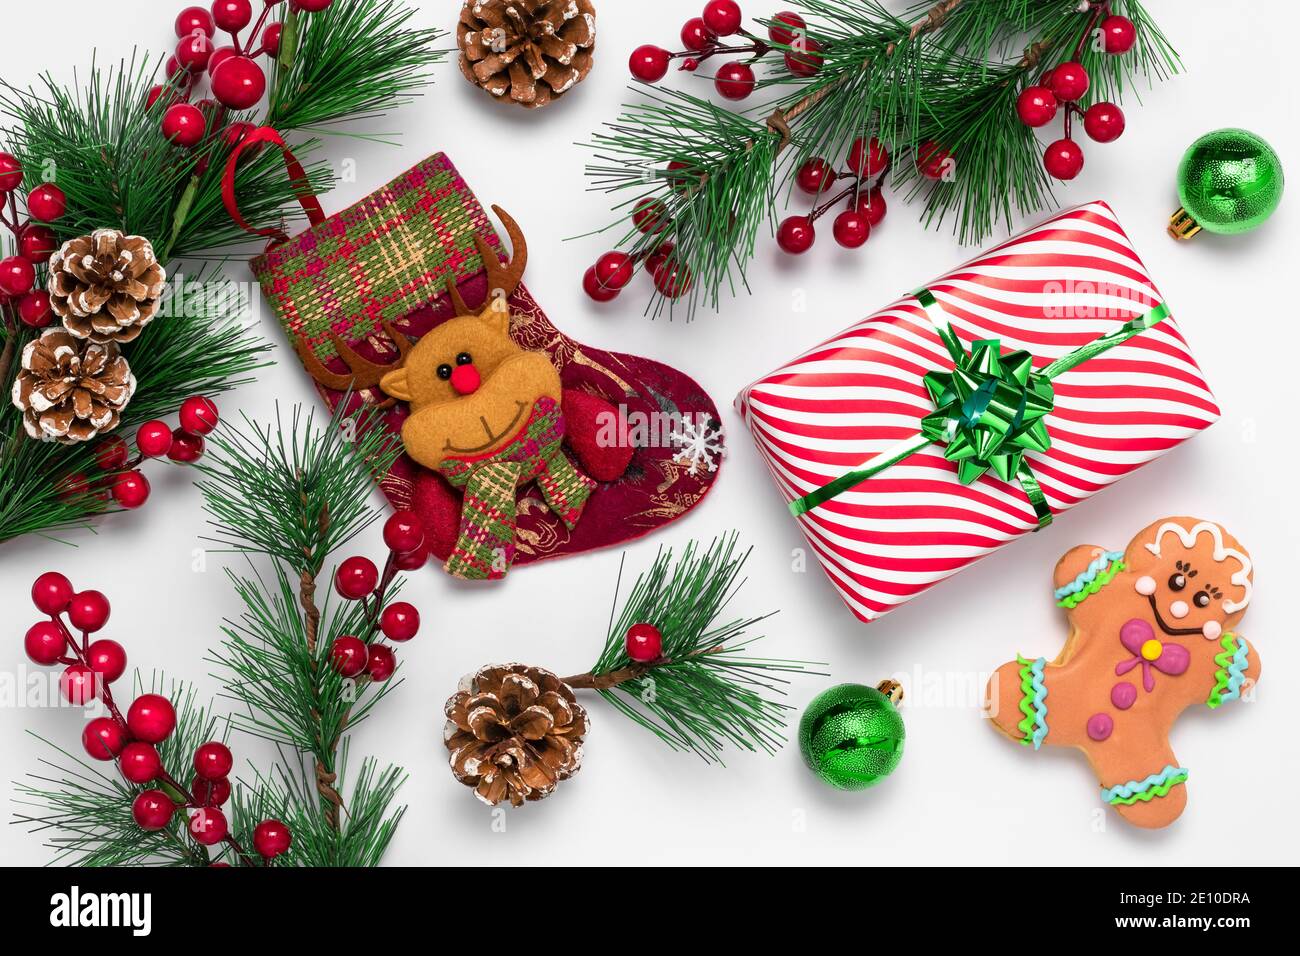 Weiße Weihnachtskarte mit Lebkuchenmann und Strumpf mit Filzrentier verziert. Festliches Neujahr Hintergrund. Kekse und Dekorationen aus gr Stockfoto